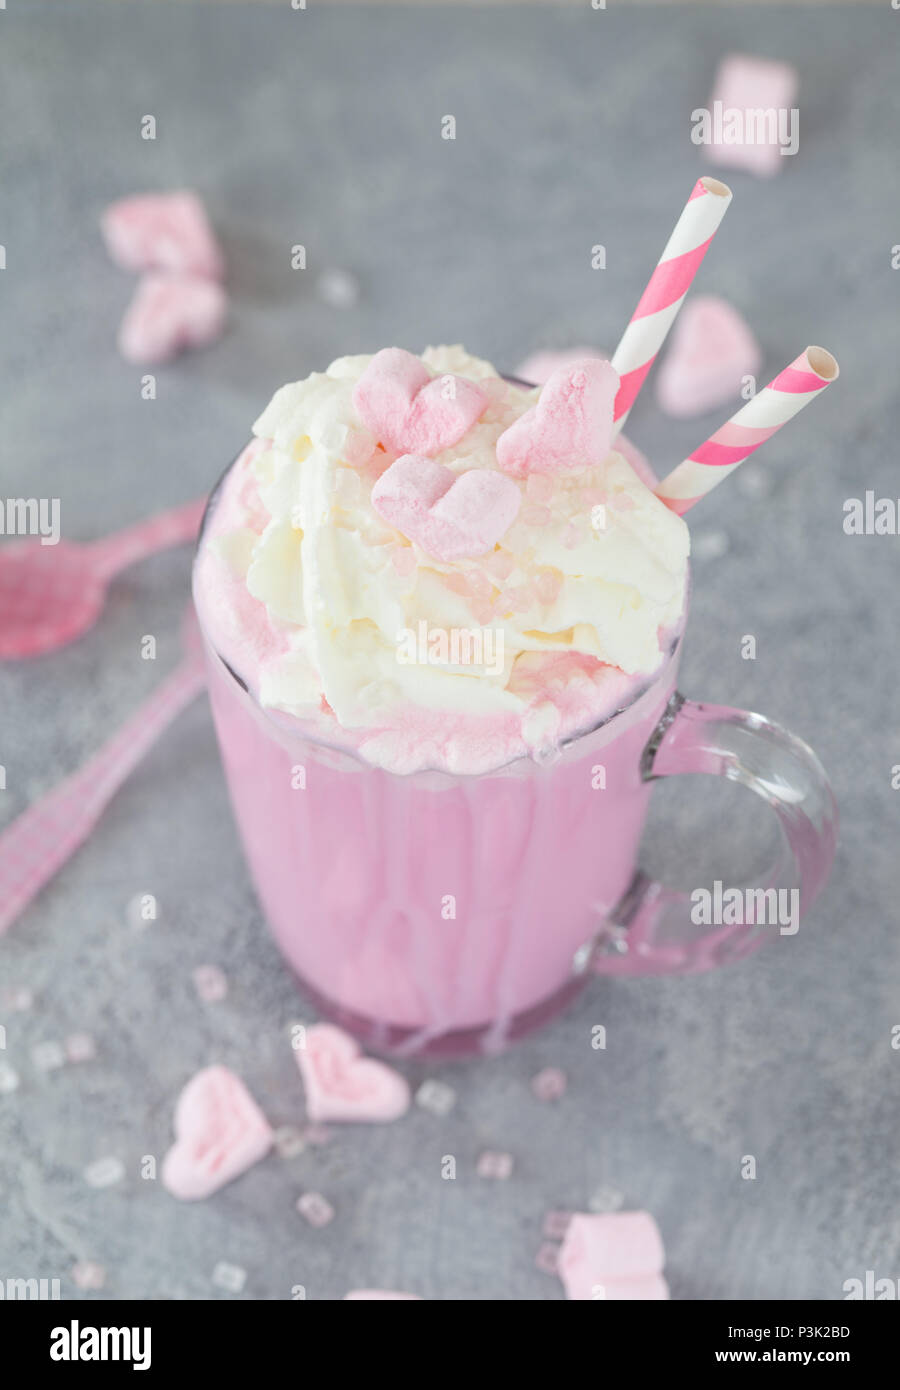 Chocolat chaud rose / lait aromatisé avec de la crème fouettée et les guimauves Banque D'Images